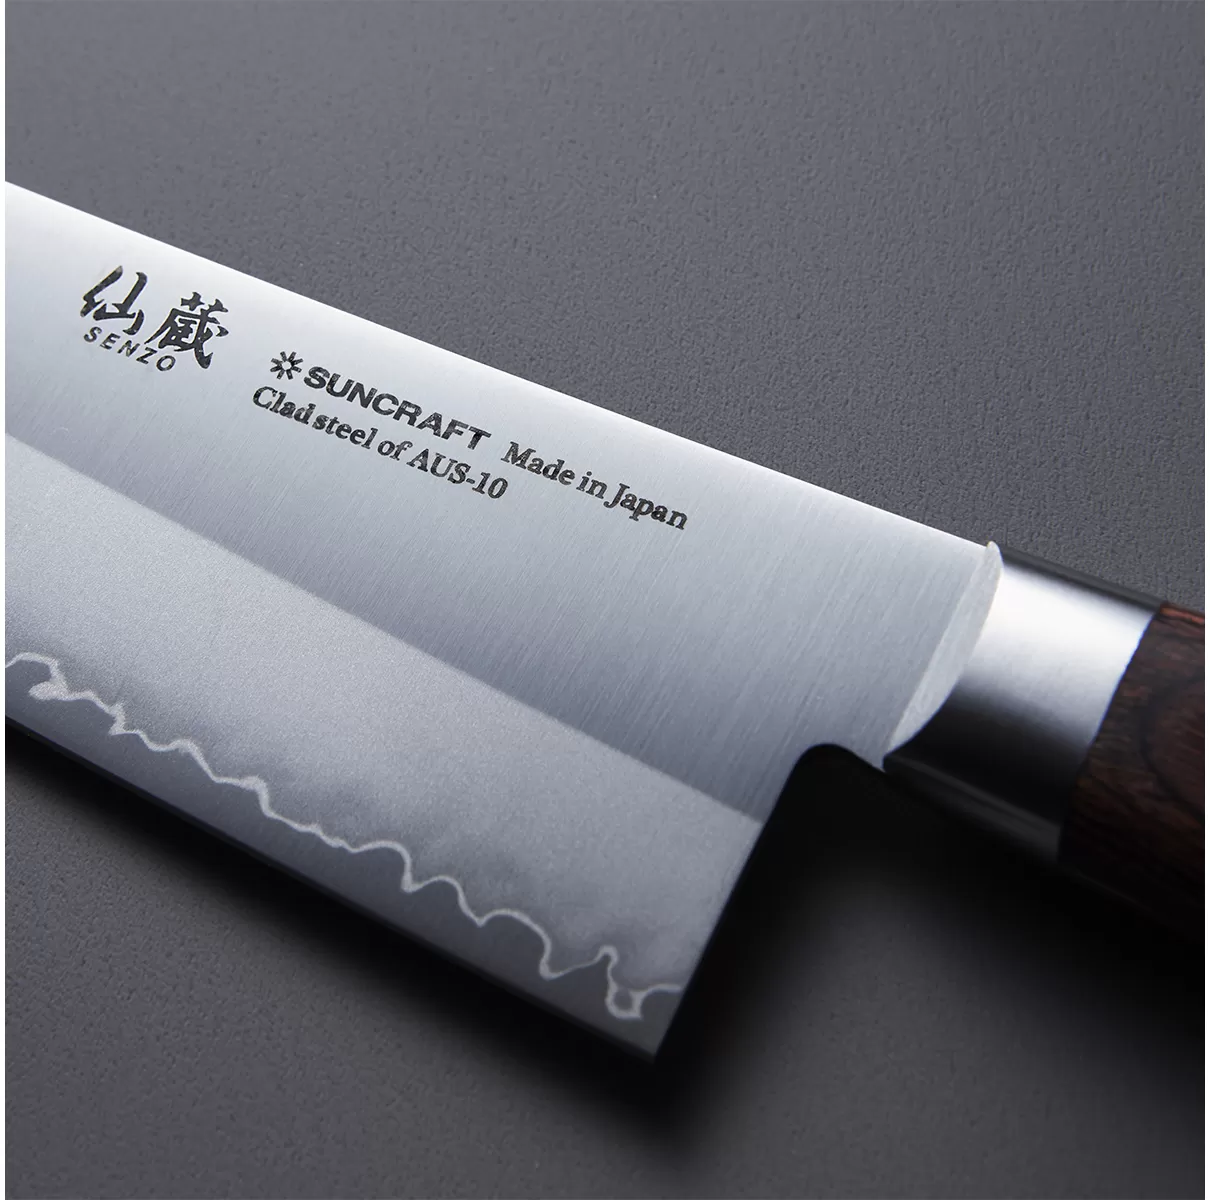 Нож кухонный Универсал 150мм, SUNСRAFT (SenzoClad) сталь AUS-10 60 HRC Япония